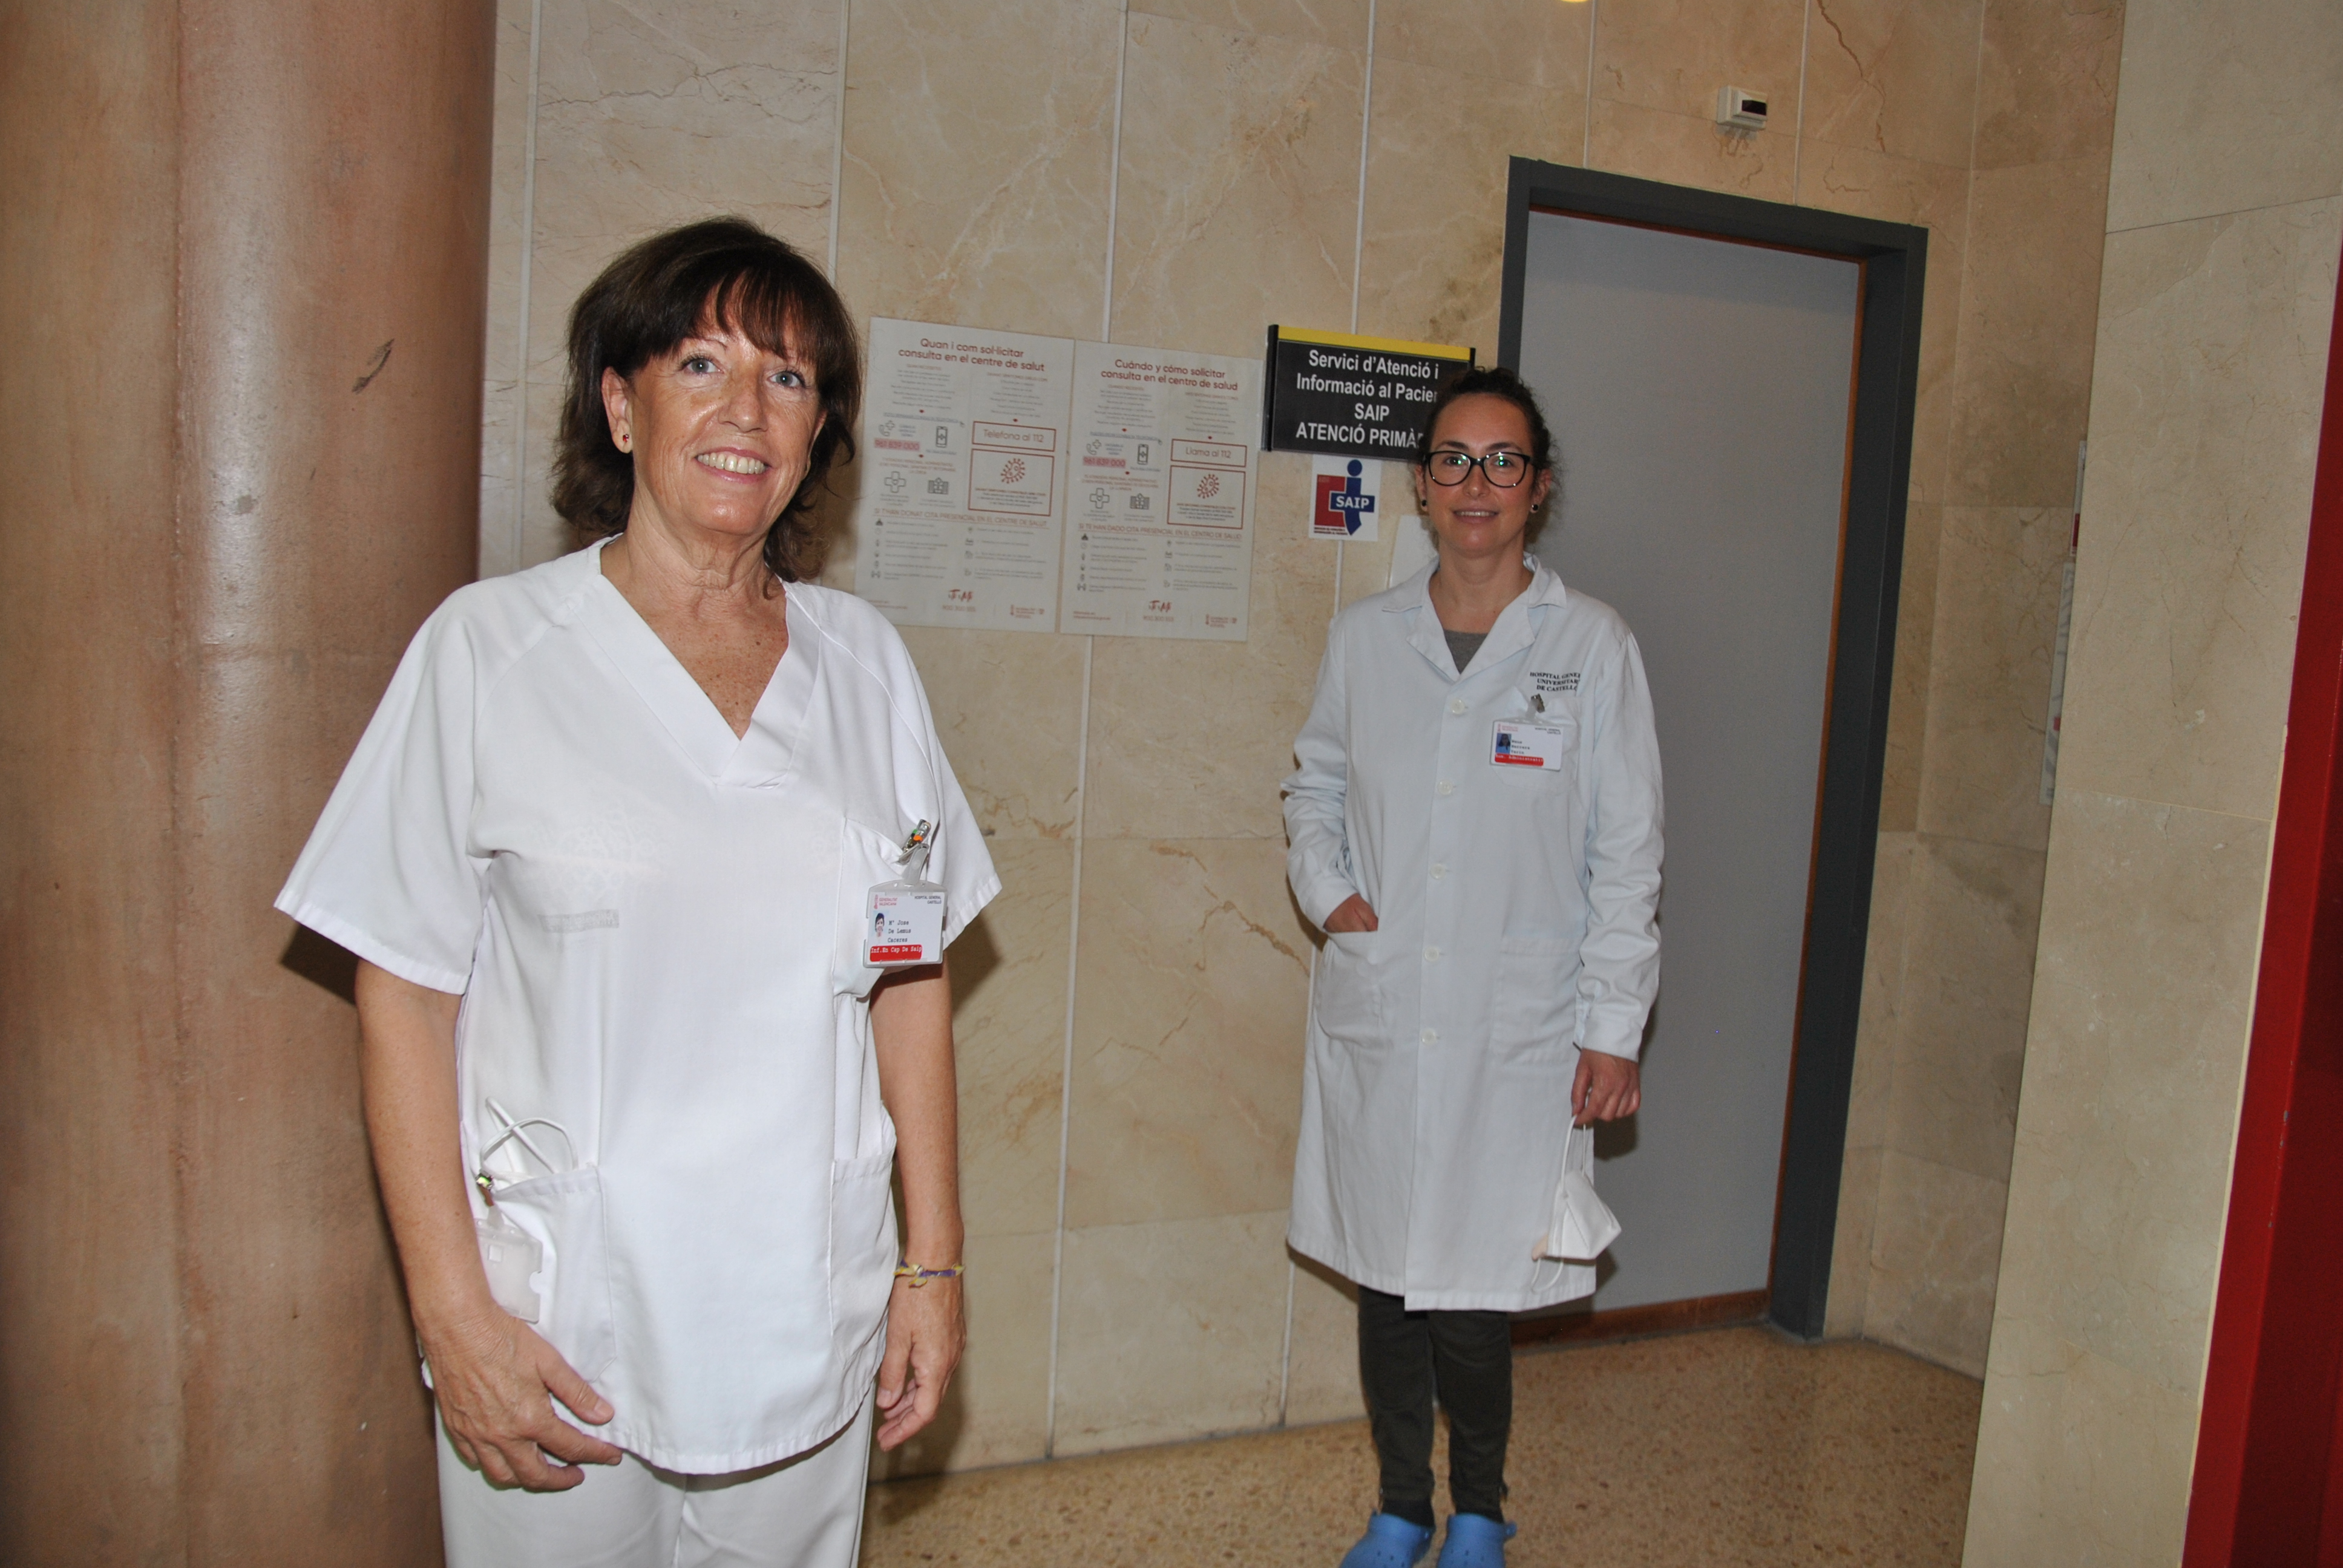 En la imatge apareix l'equip d'assistència sanitària d'Atenció Primària del Departament de Salut de la Plana. Són dues dones.